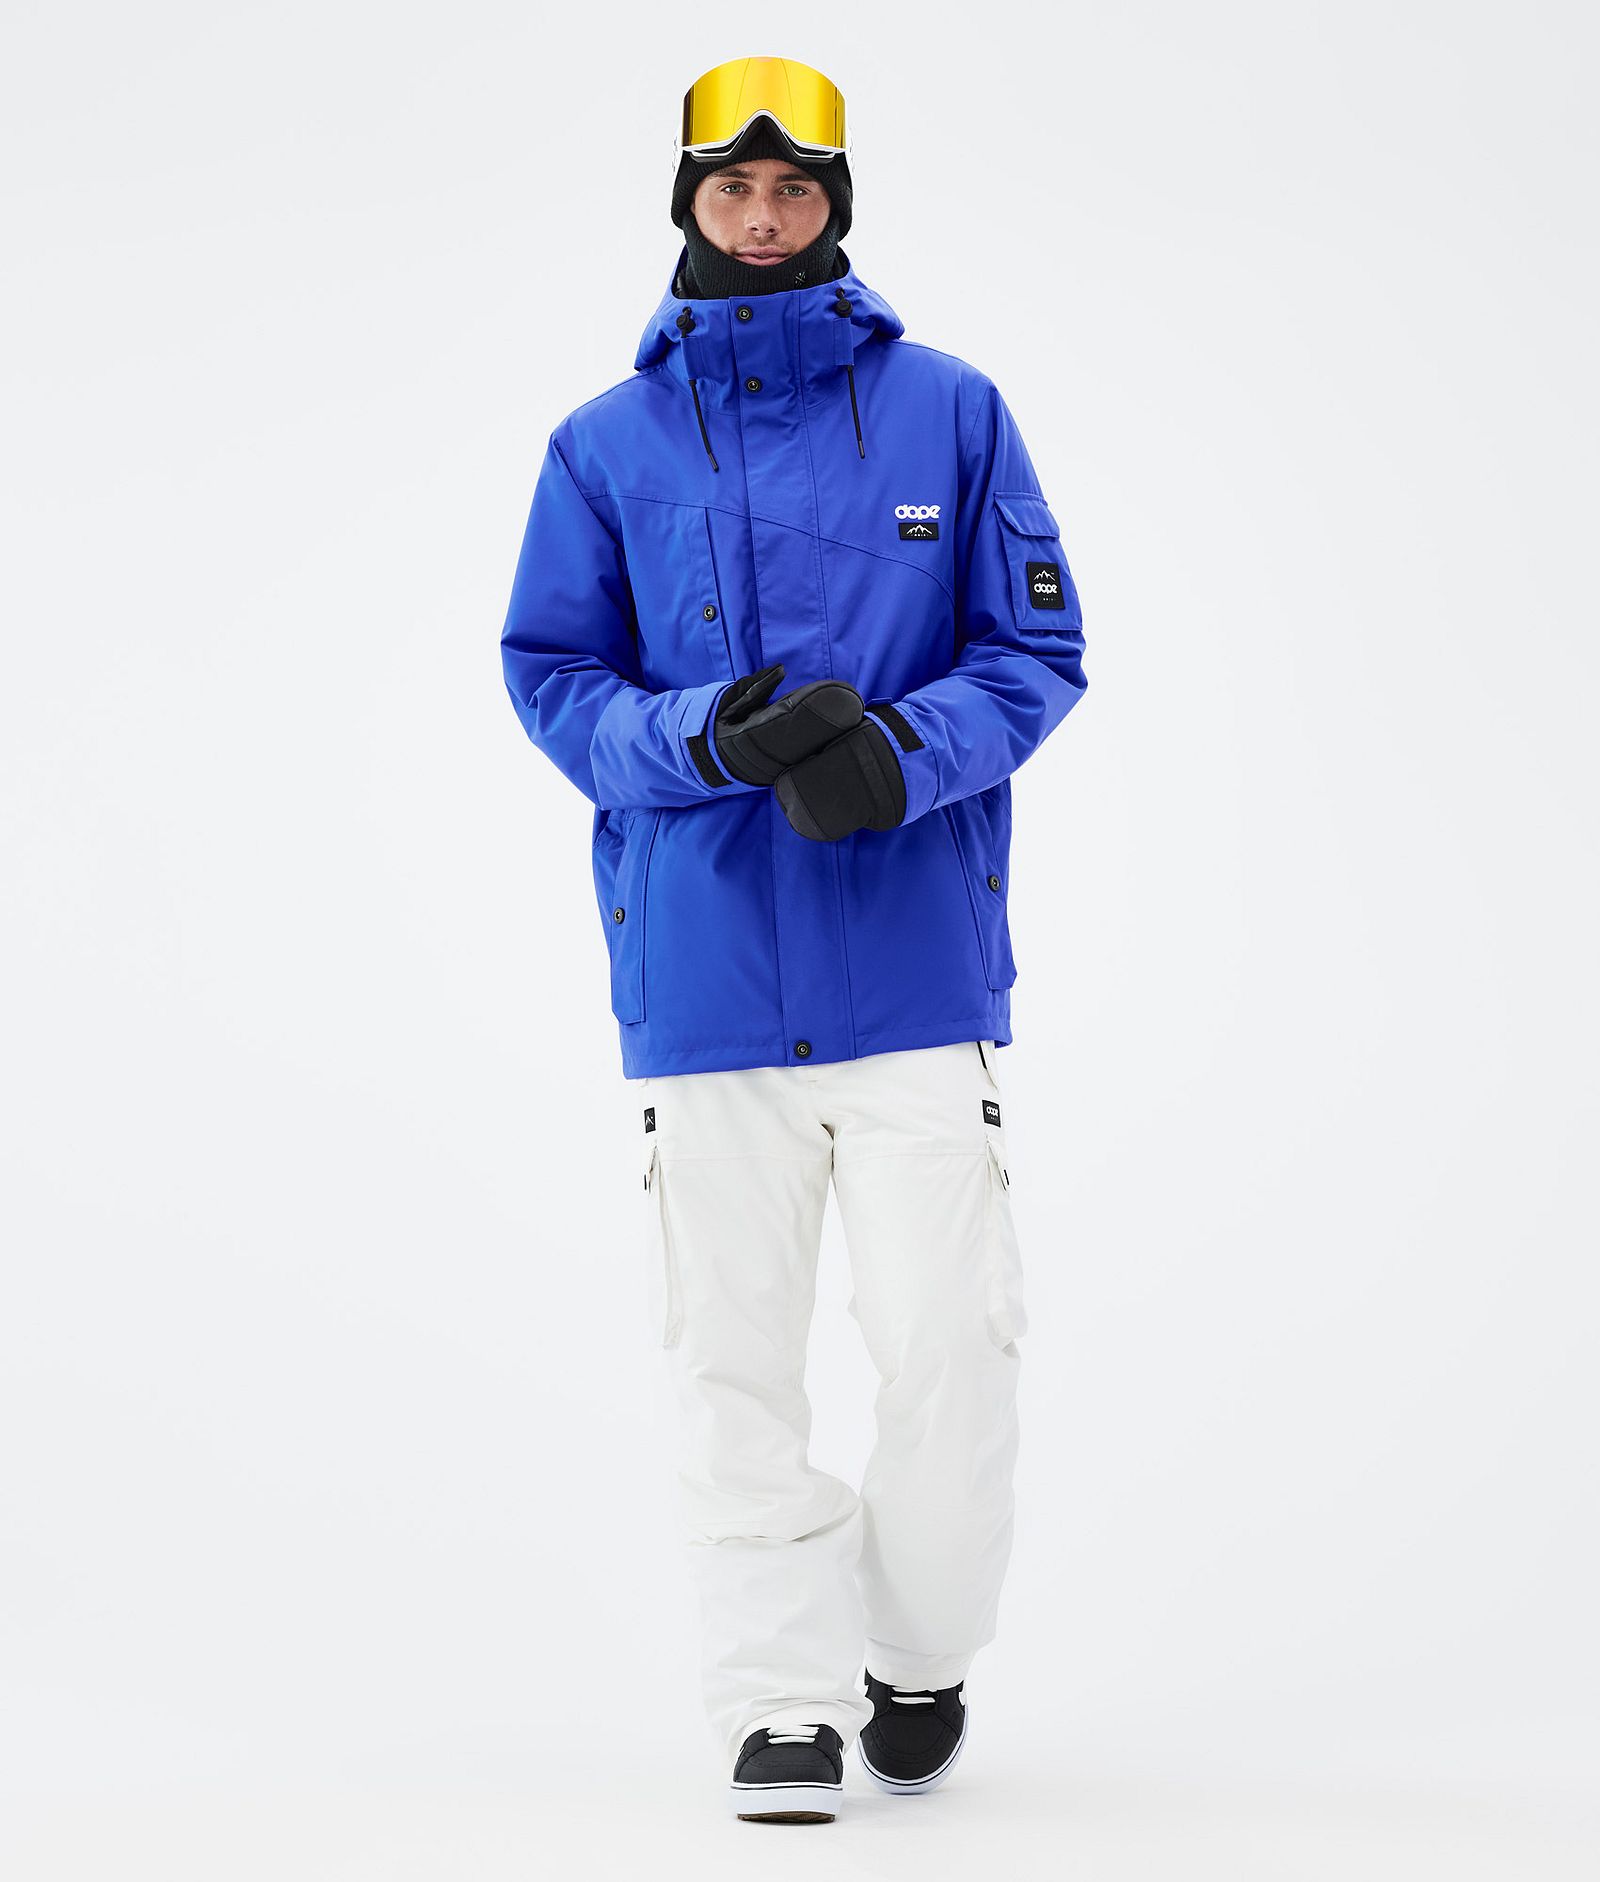 Adept Giacca Snowboard Uomo Cobalt Blue